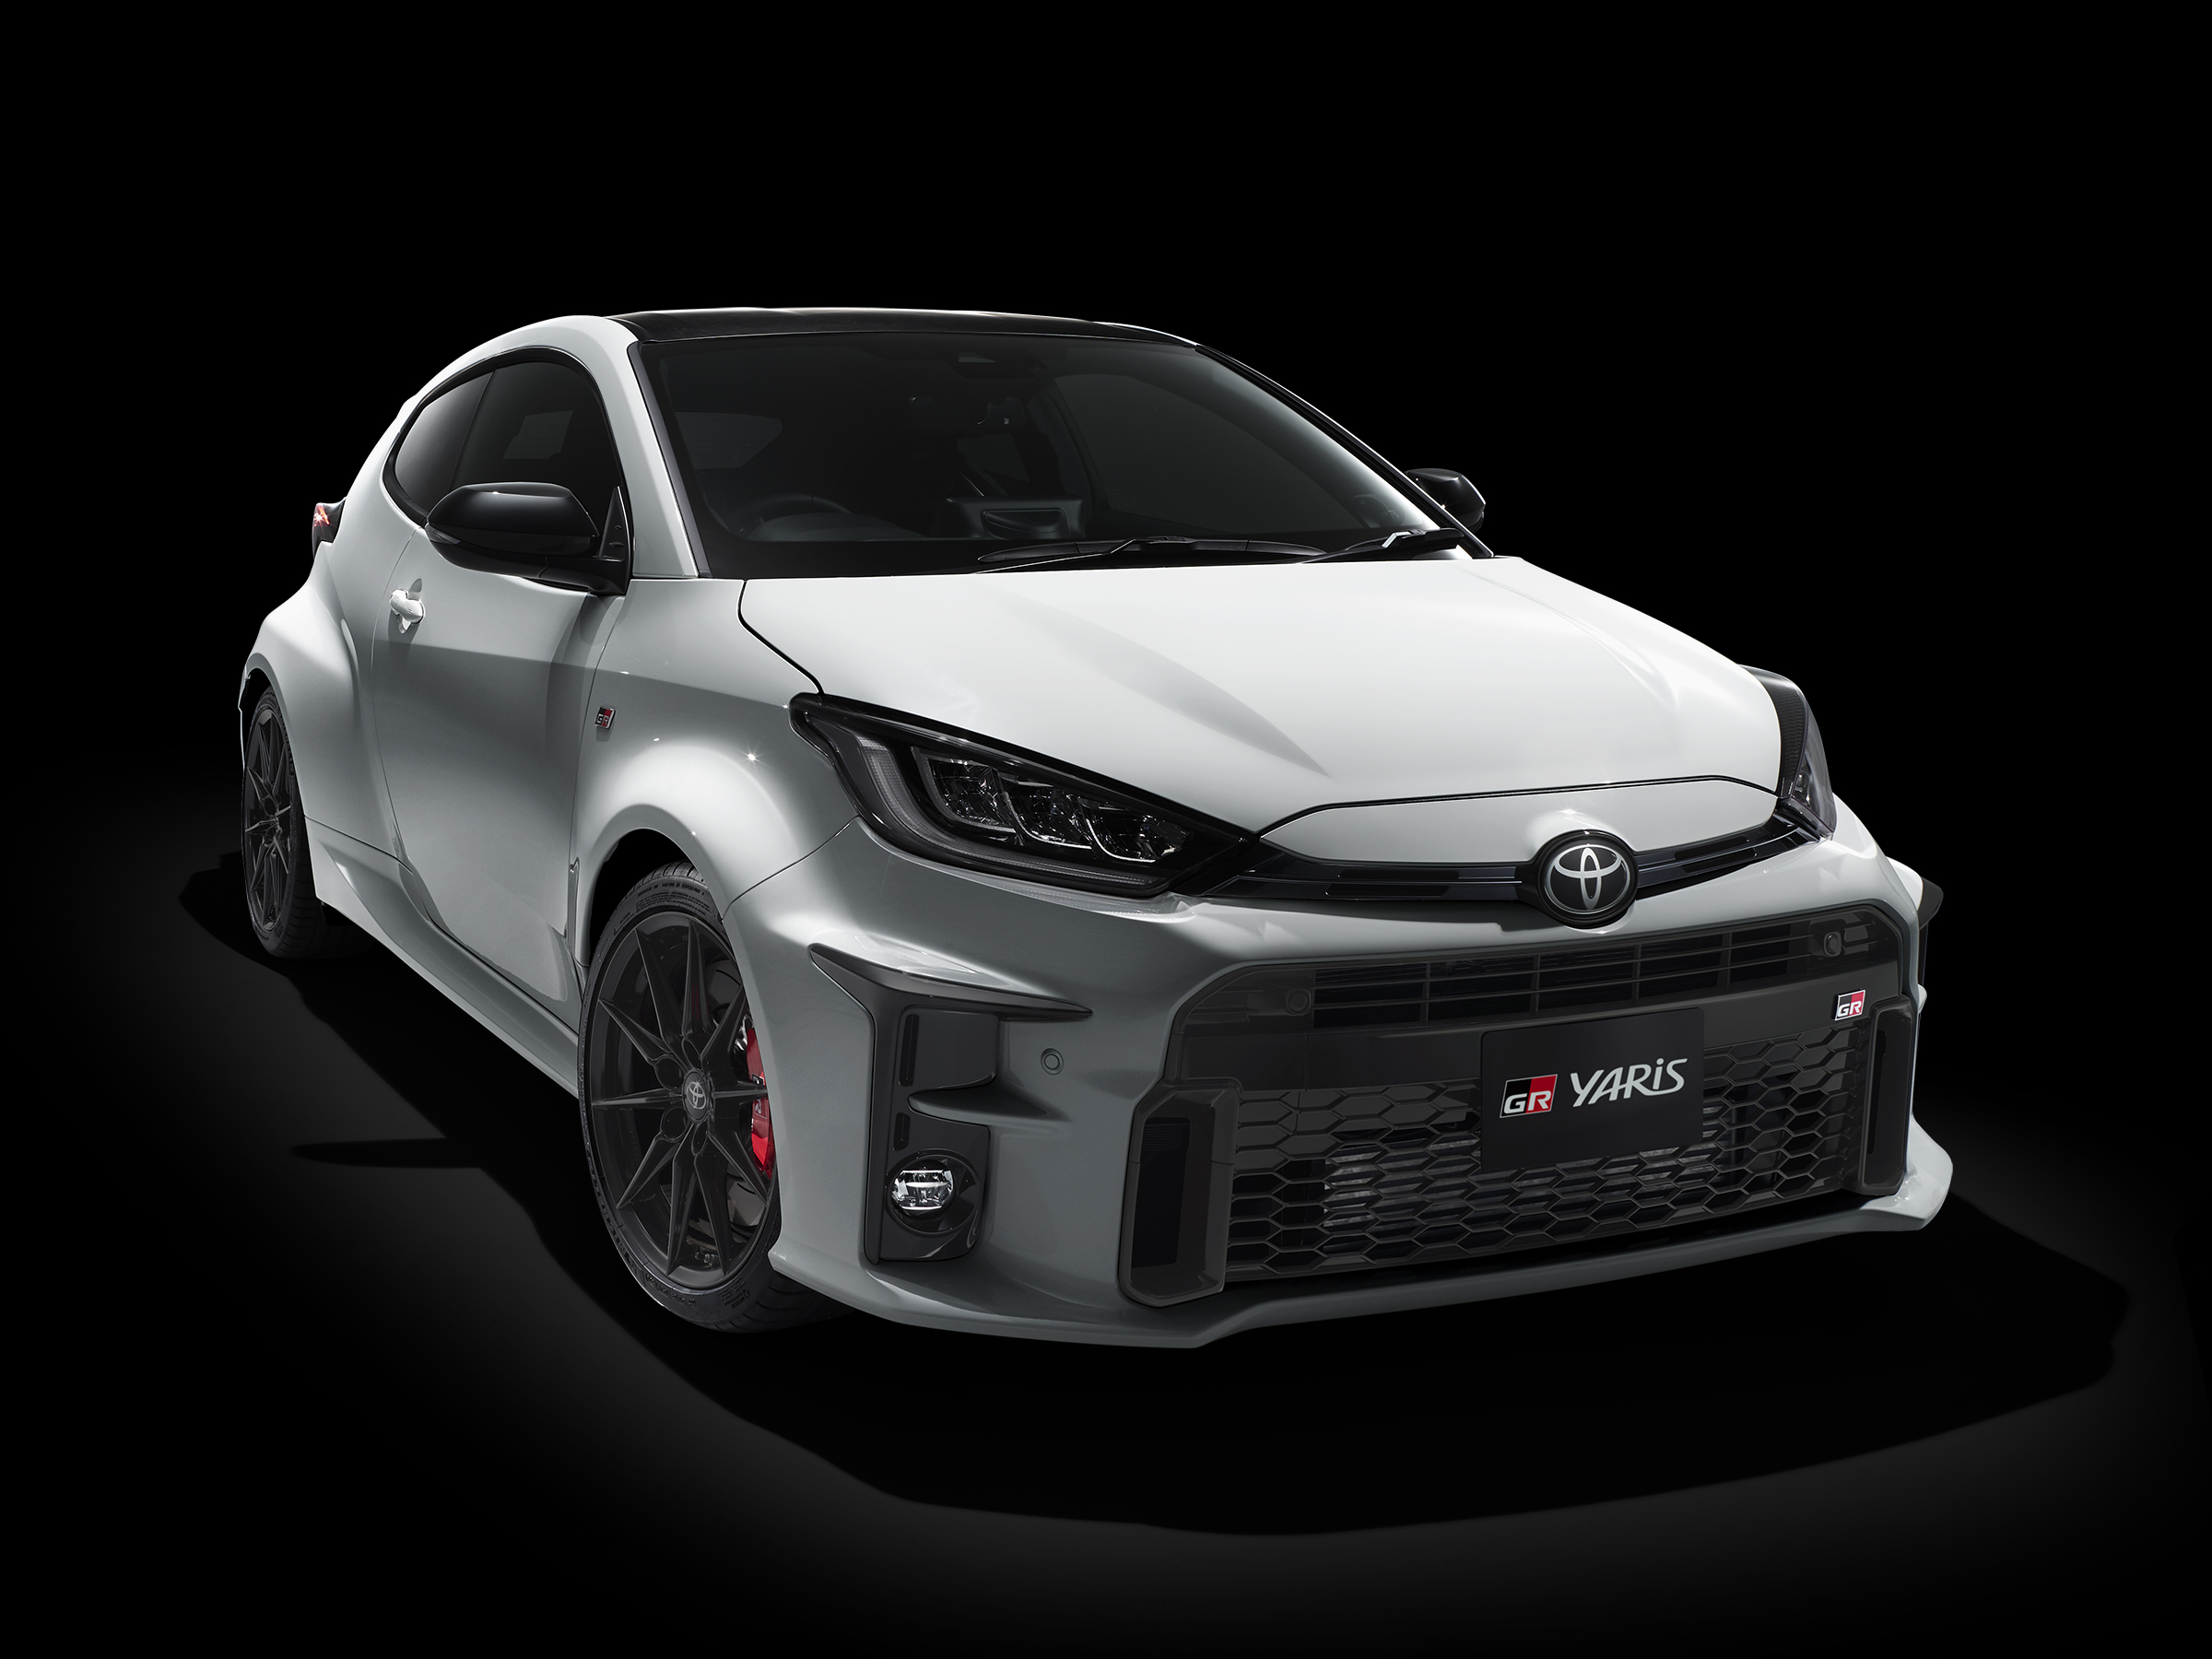 Toyota GR Yaris 2020 dimensioni e prezzo